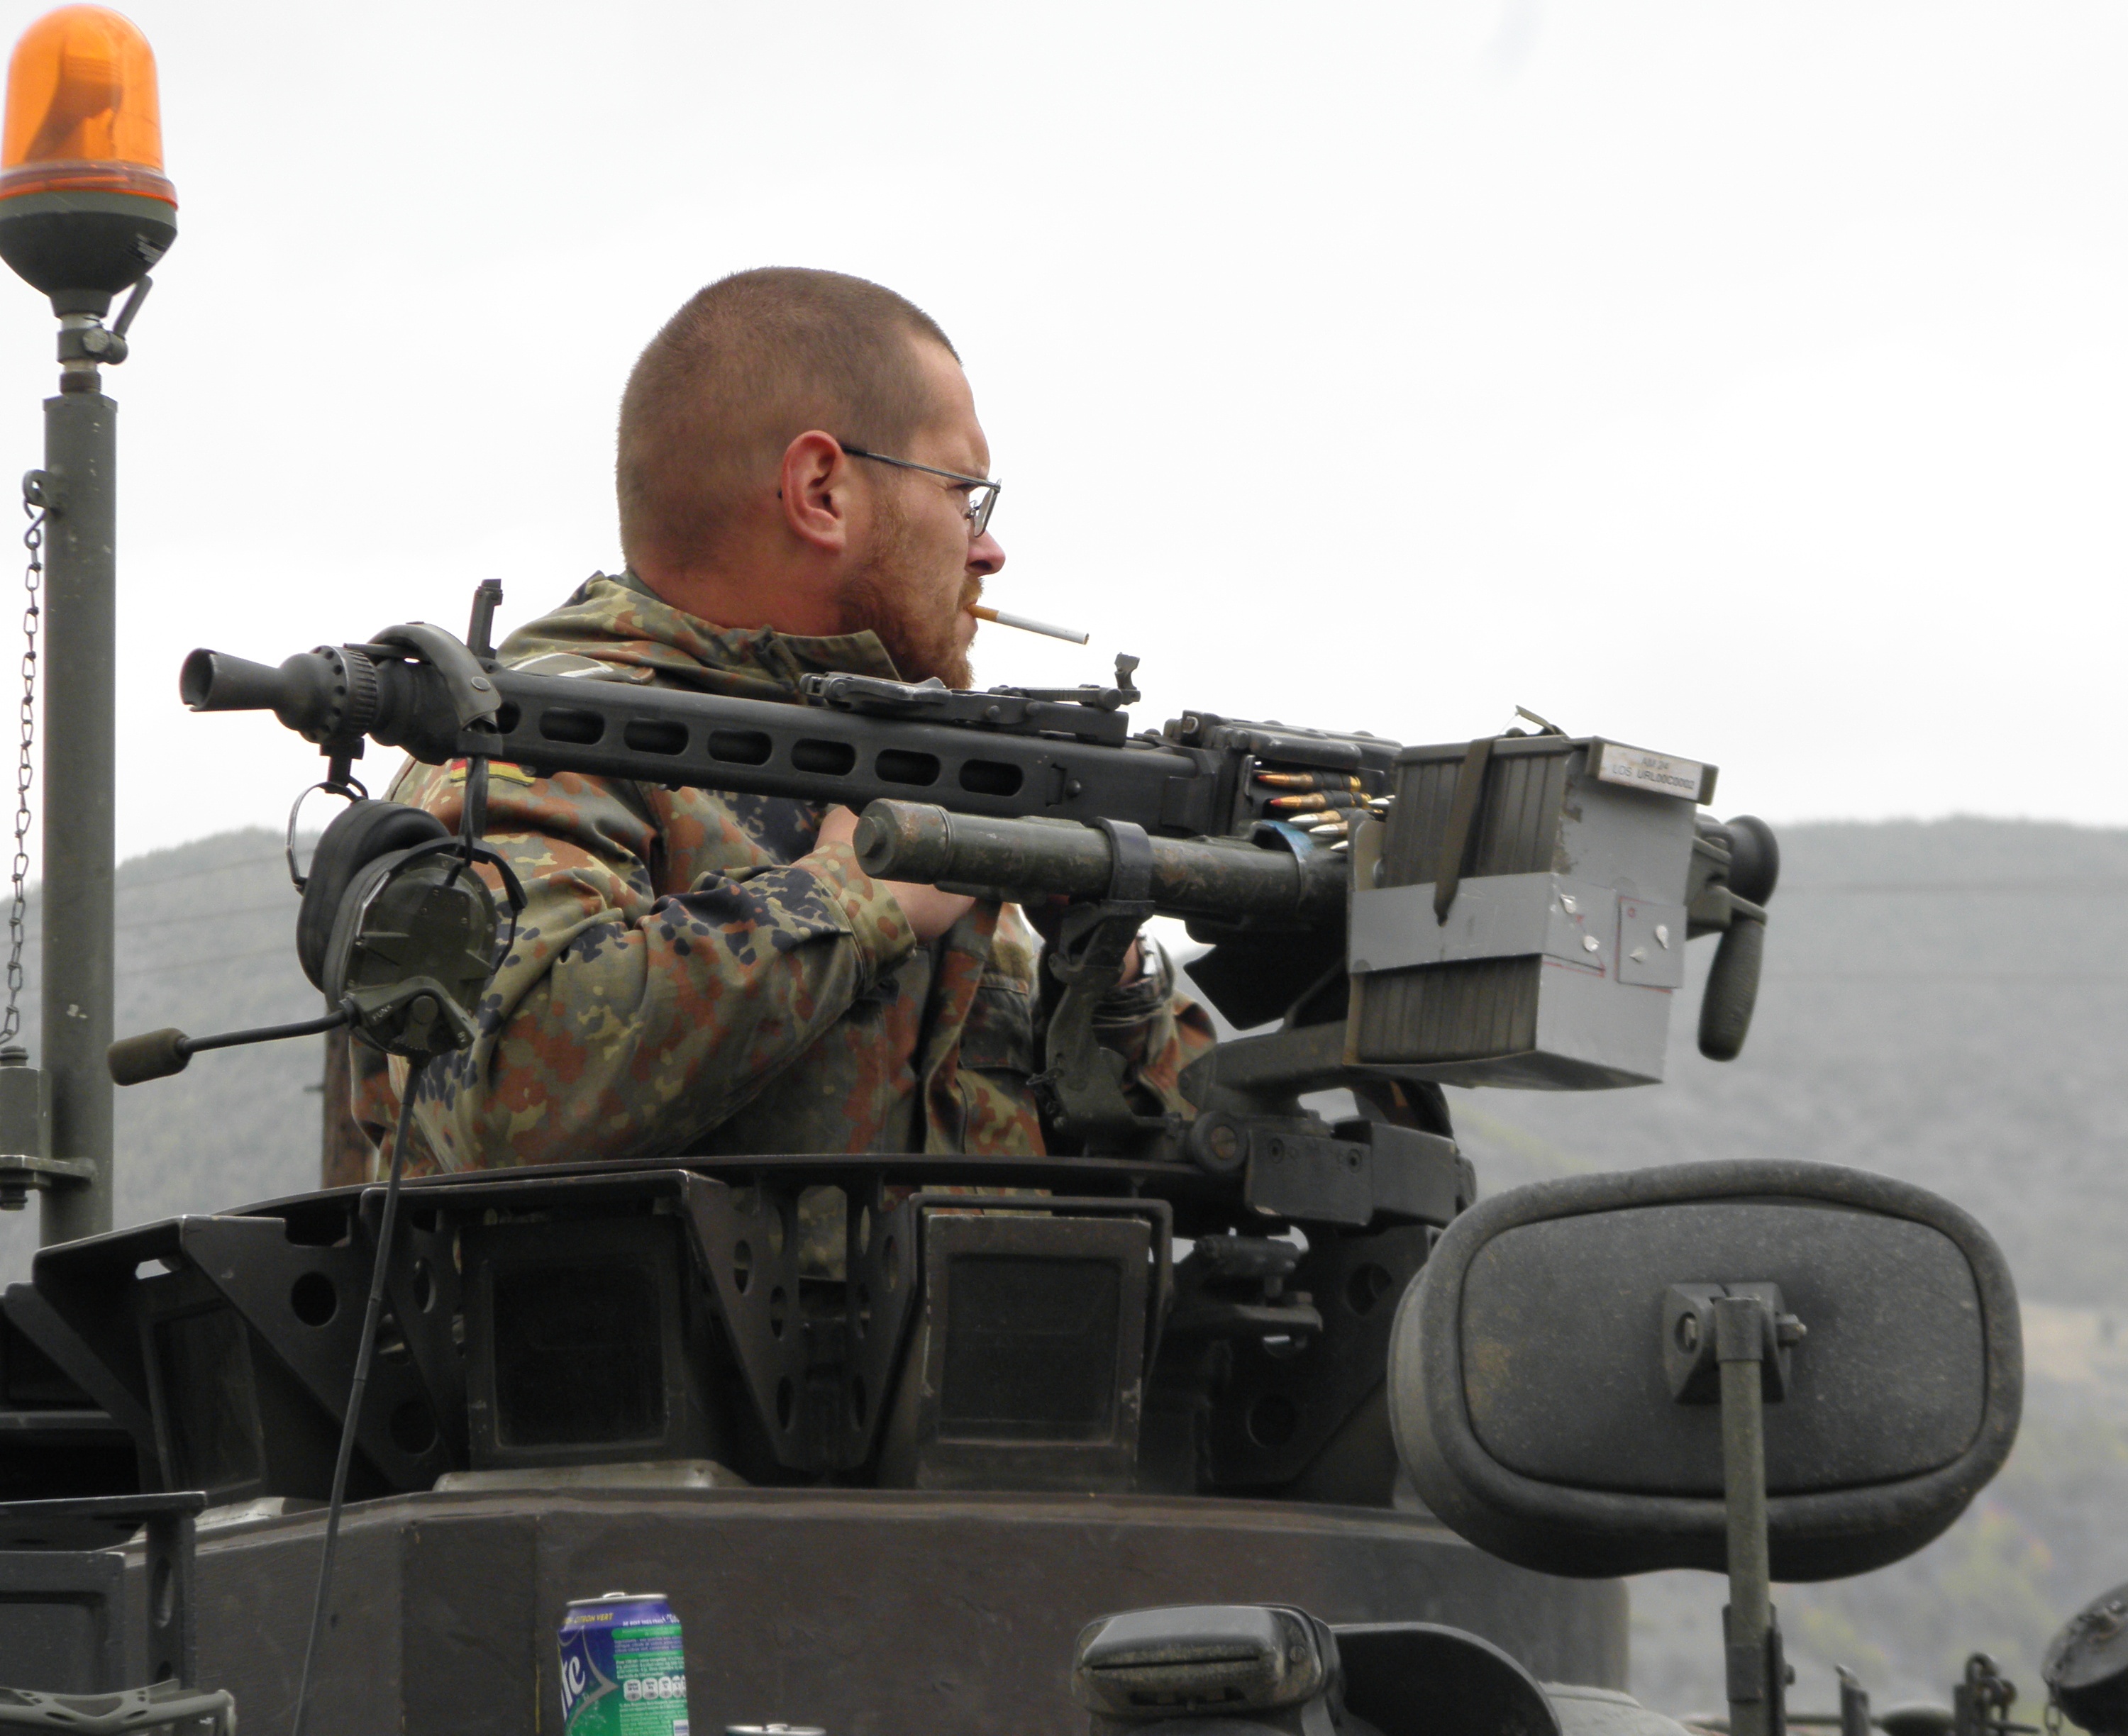 Немачки војник на ''Јазавцу'' за разбијање барикада  и пушкомитраљезом  са бојевом муницијом на барикадама у Зупчу 2011. код Зубиног Потока